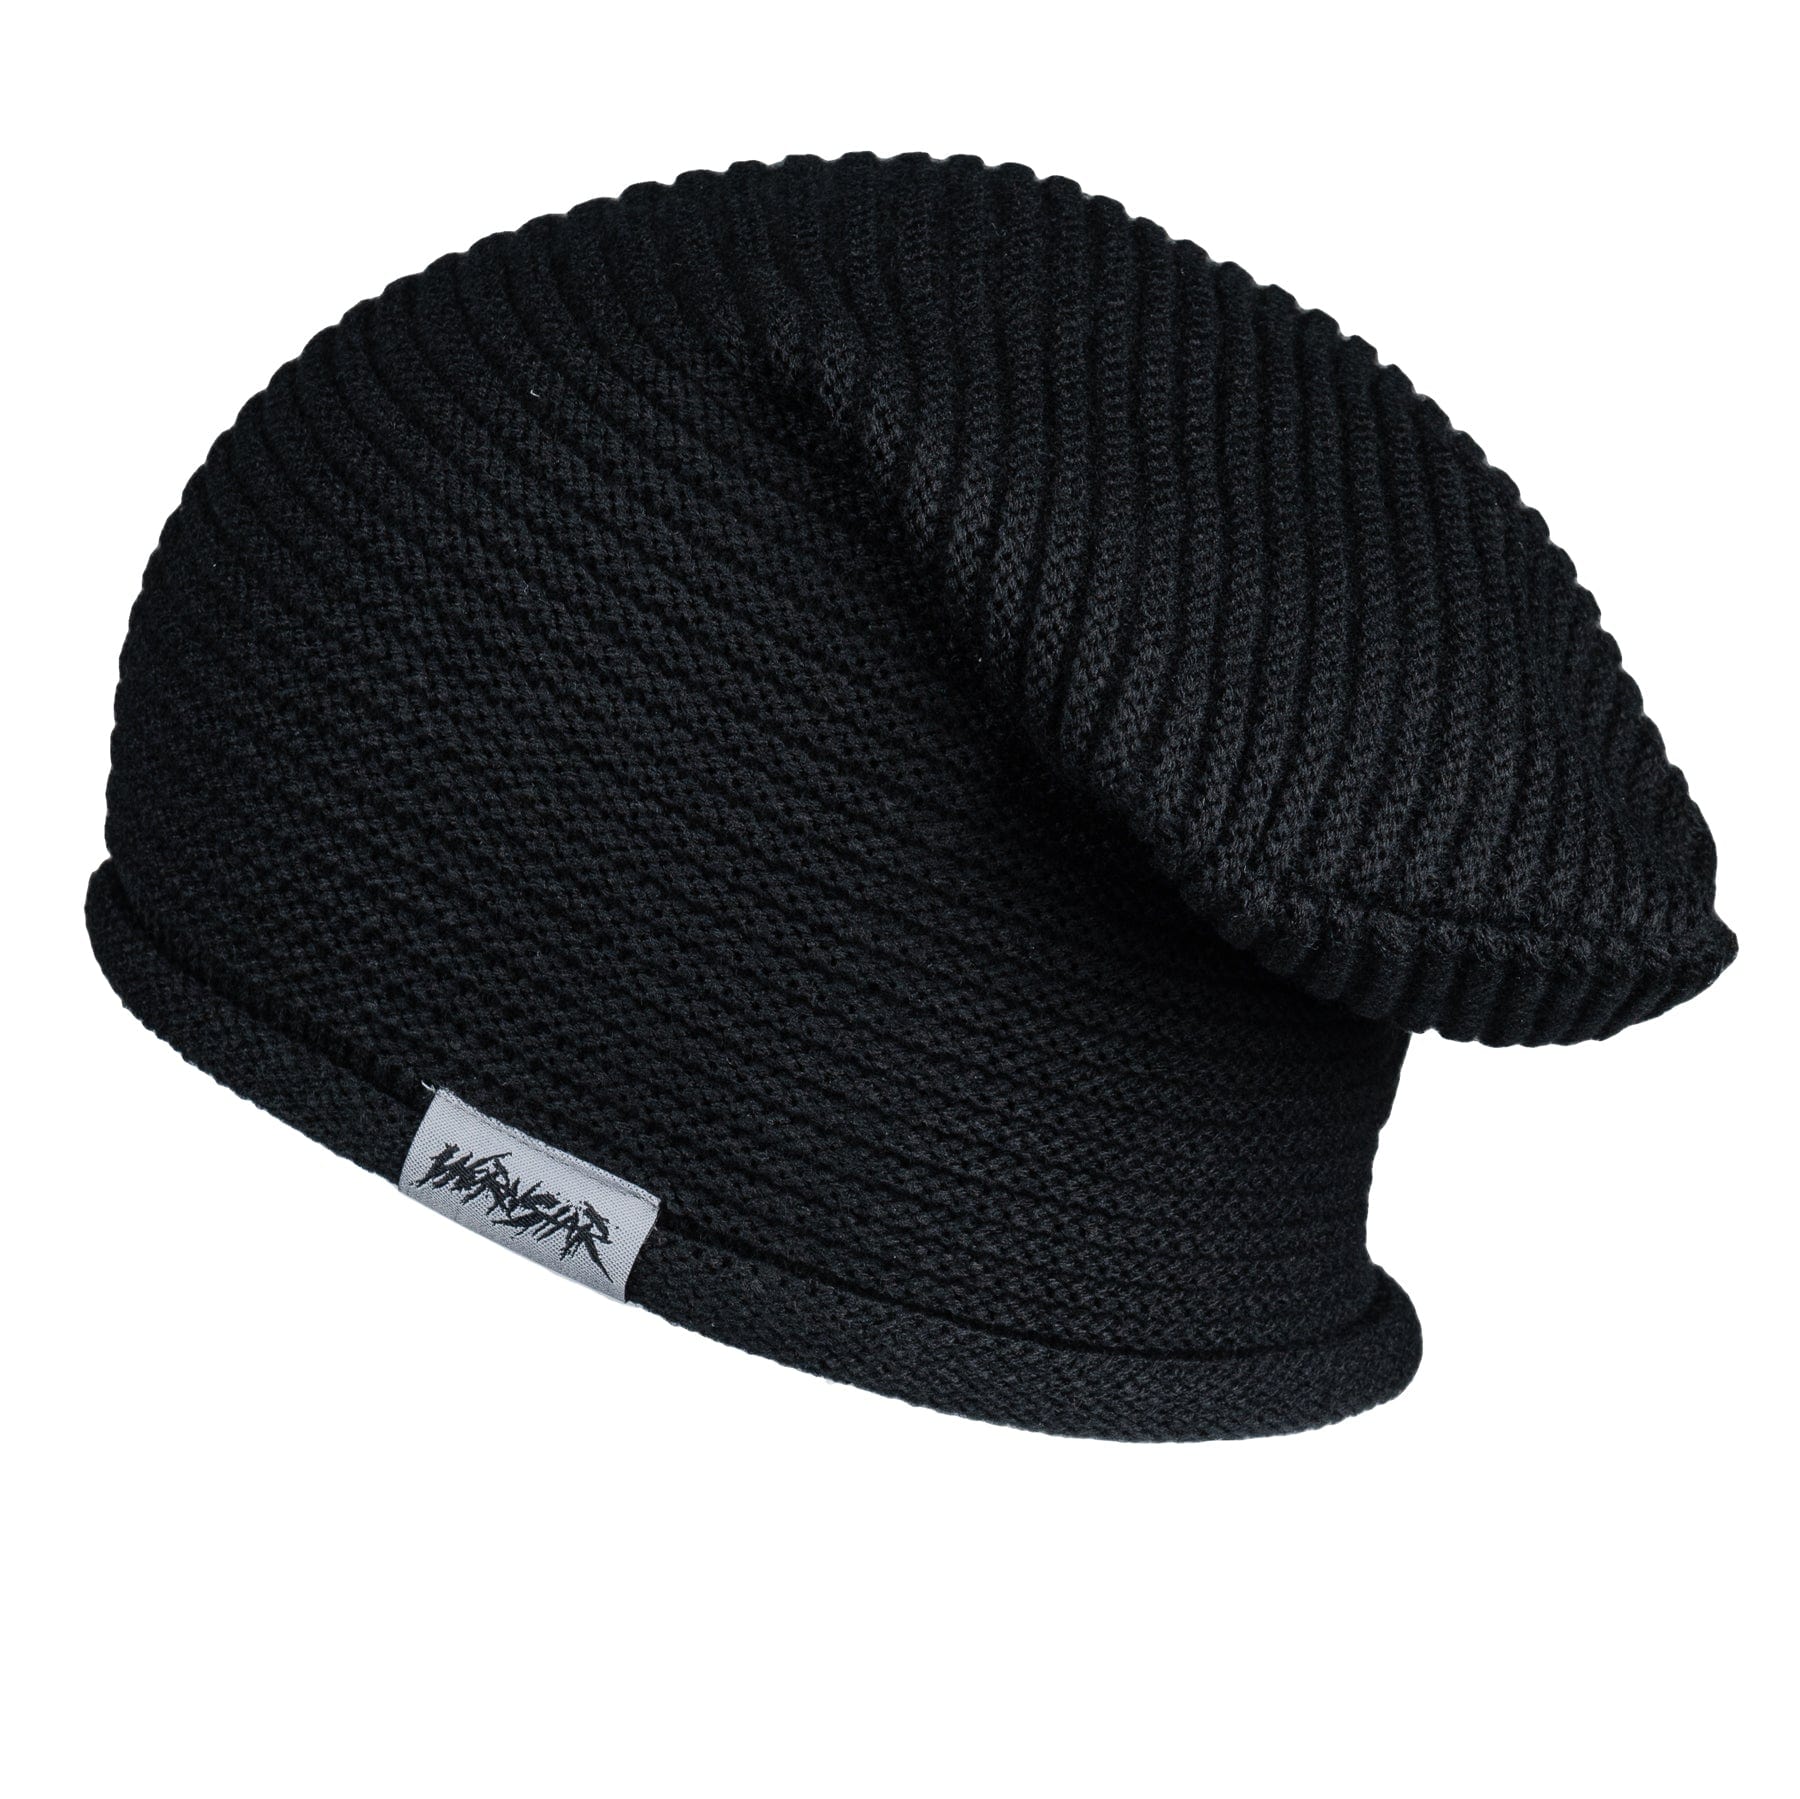 Wornstar Swag Hat Premium Essentials Beanie